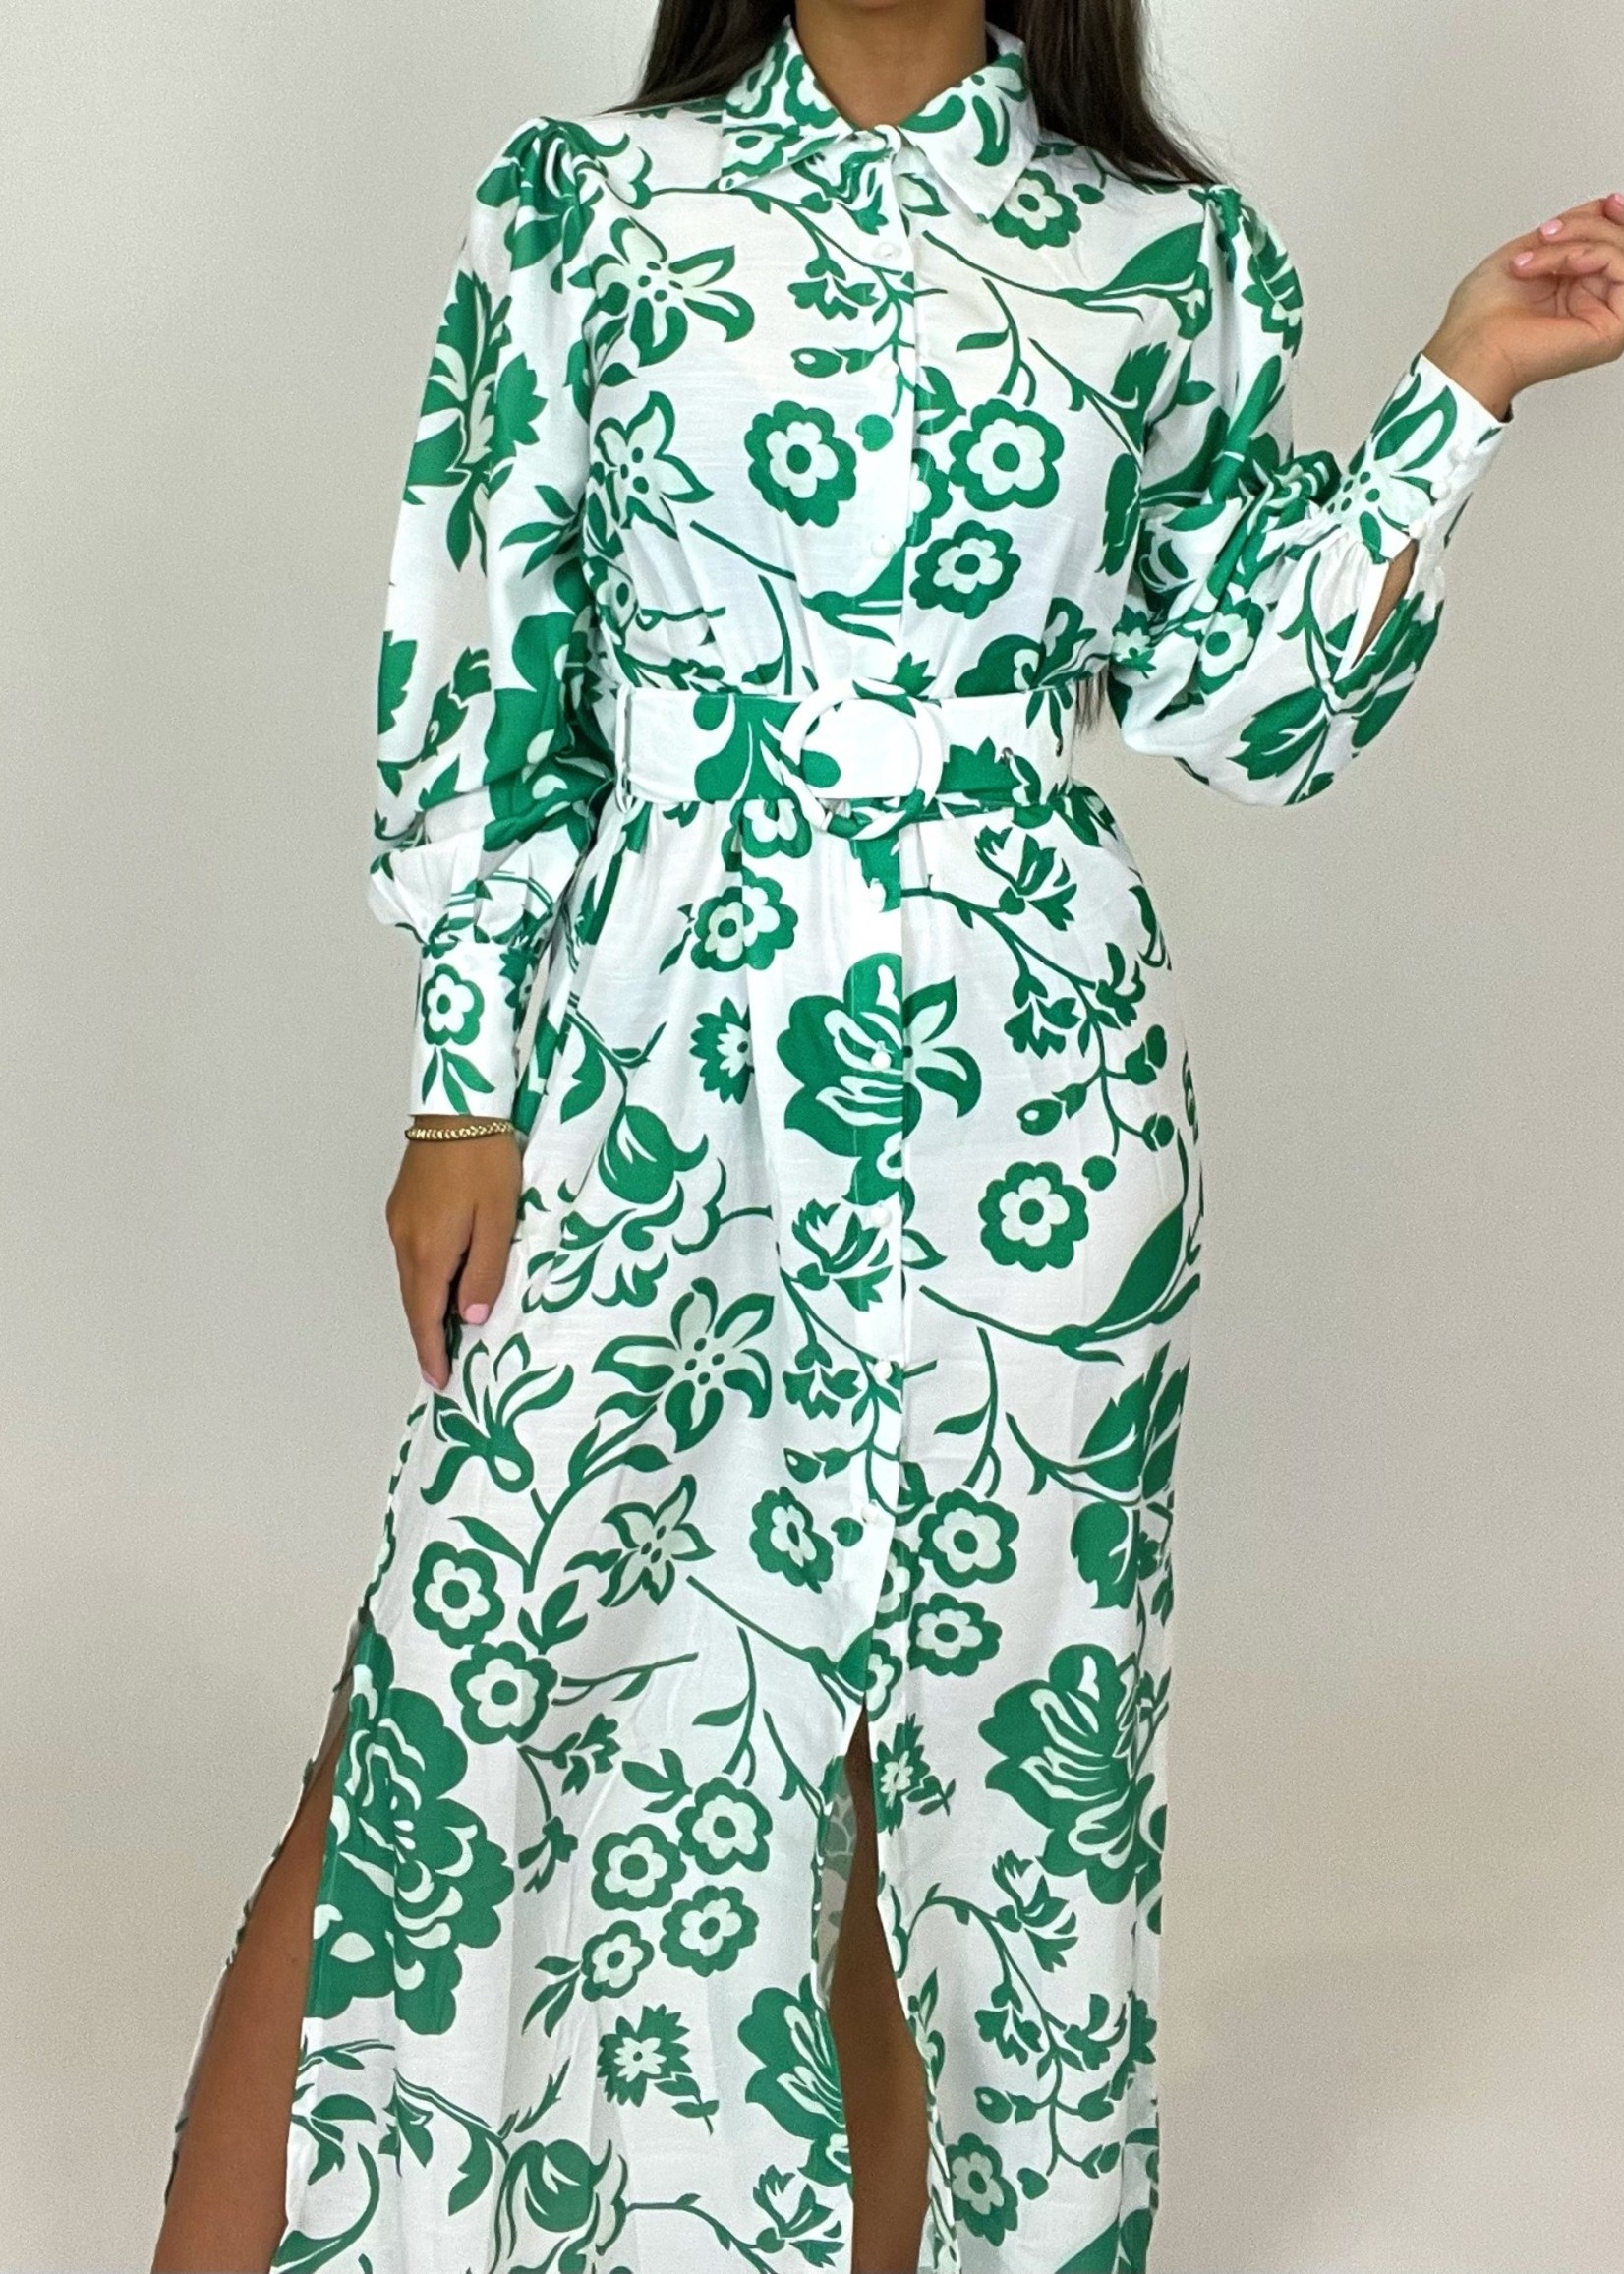 Integraal zaterdag Ga naar beneden maxi jurk met bloemen groen - AMOZA